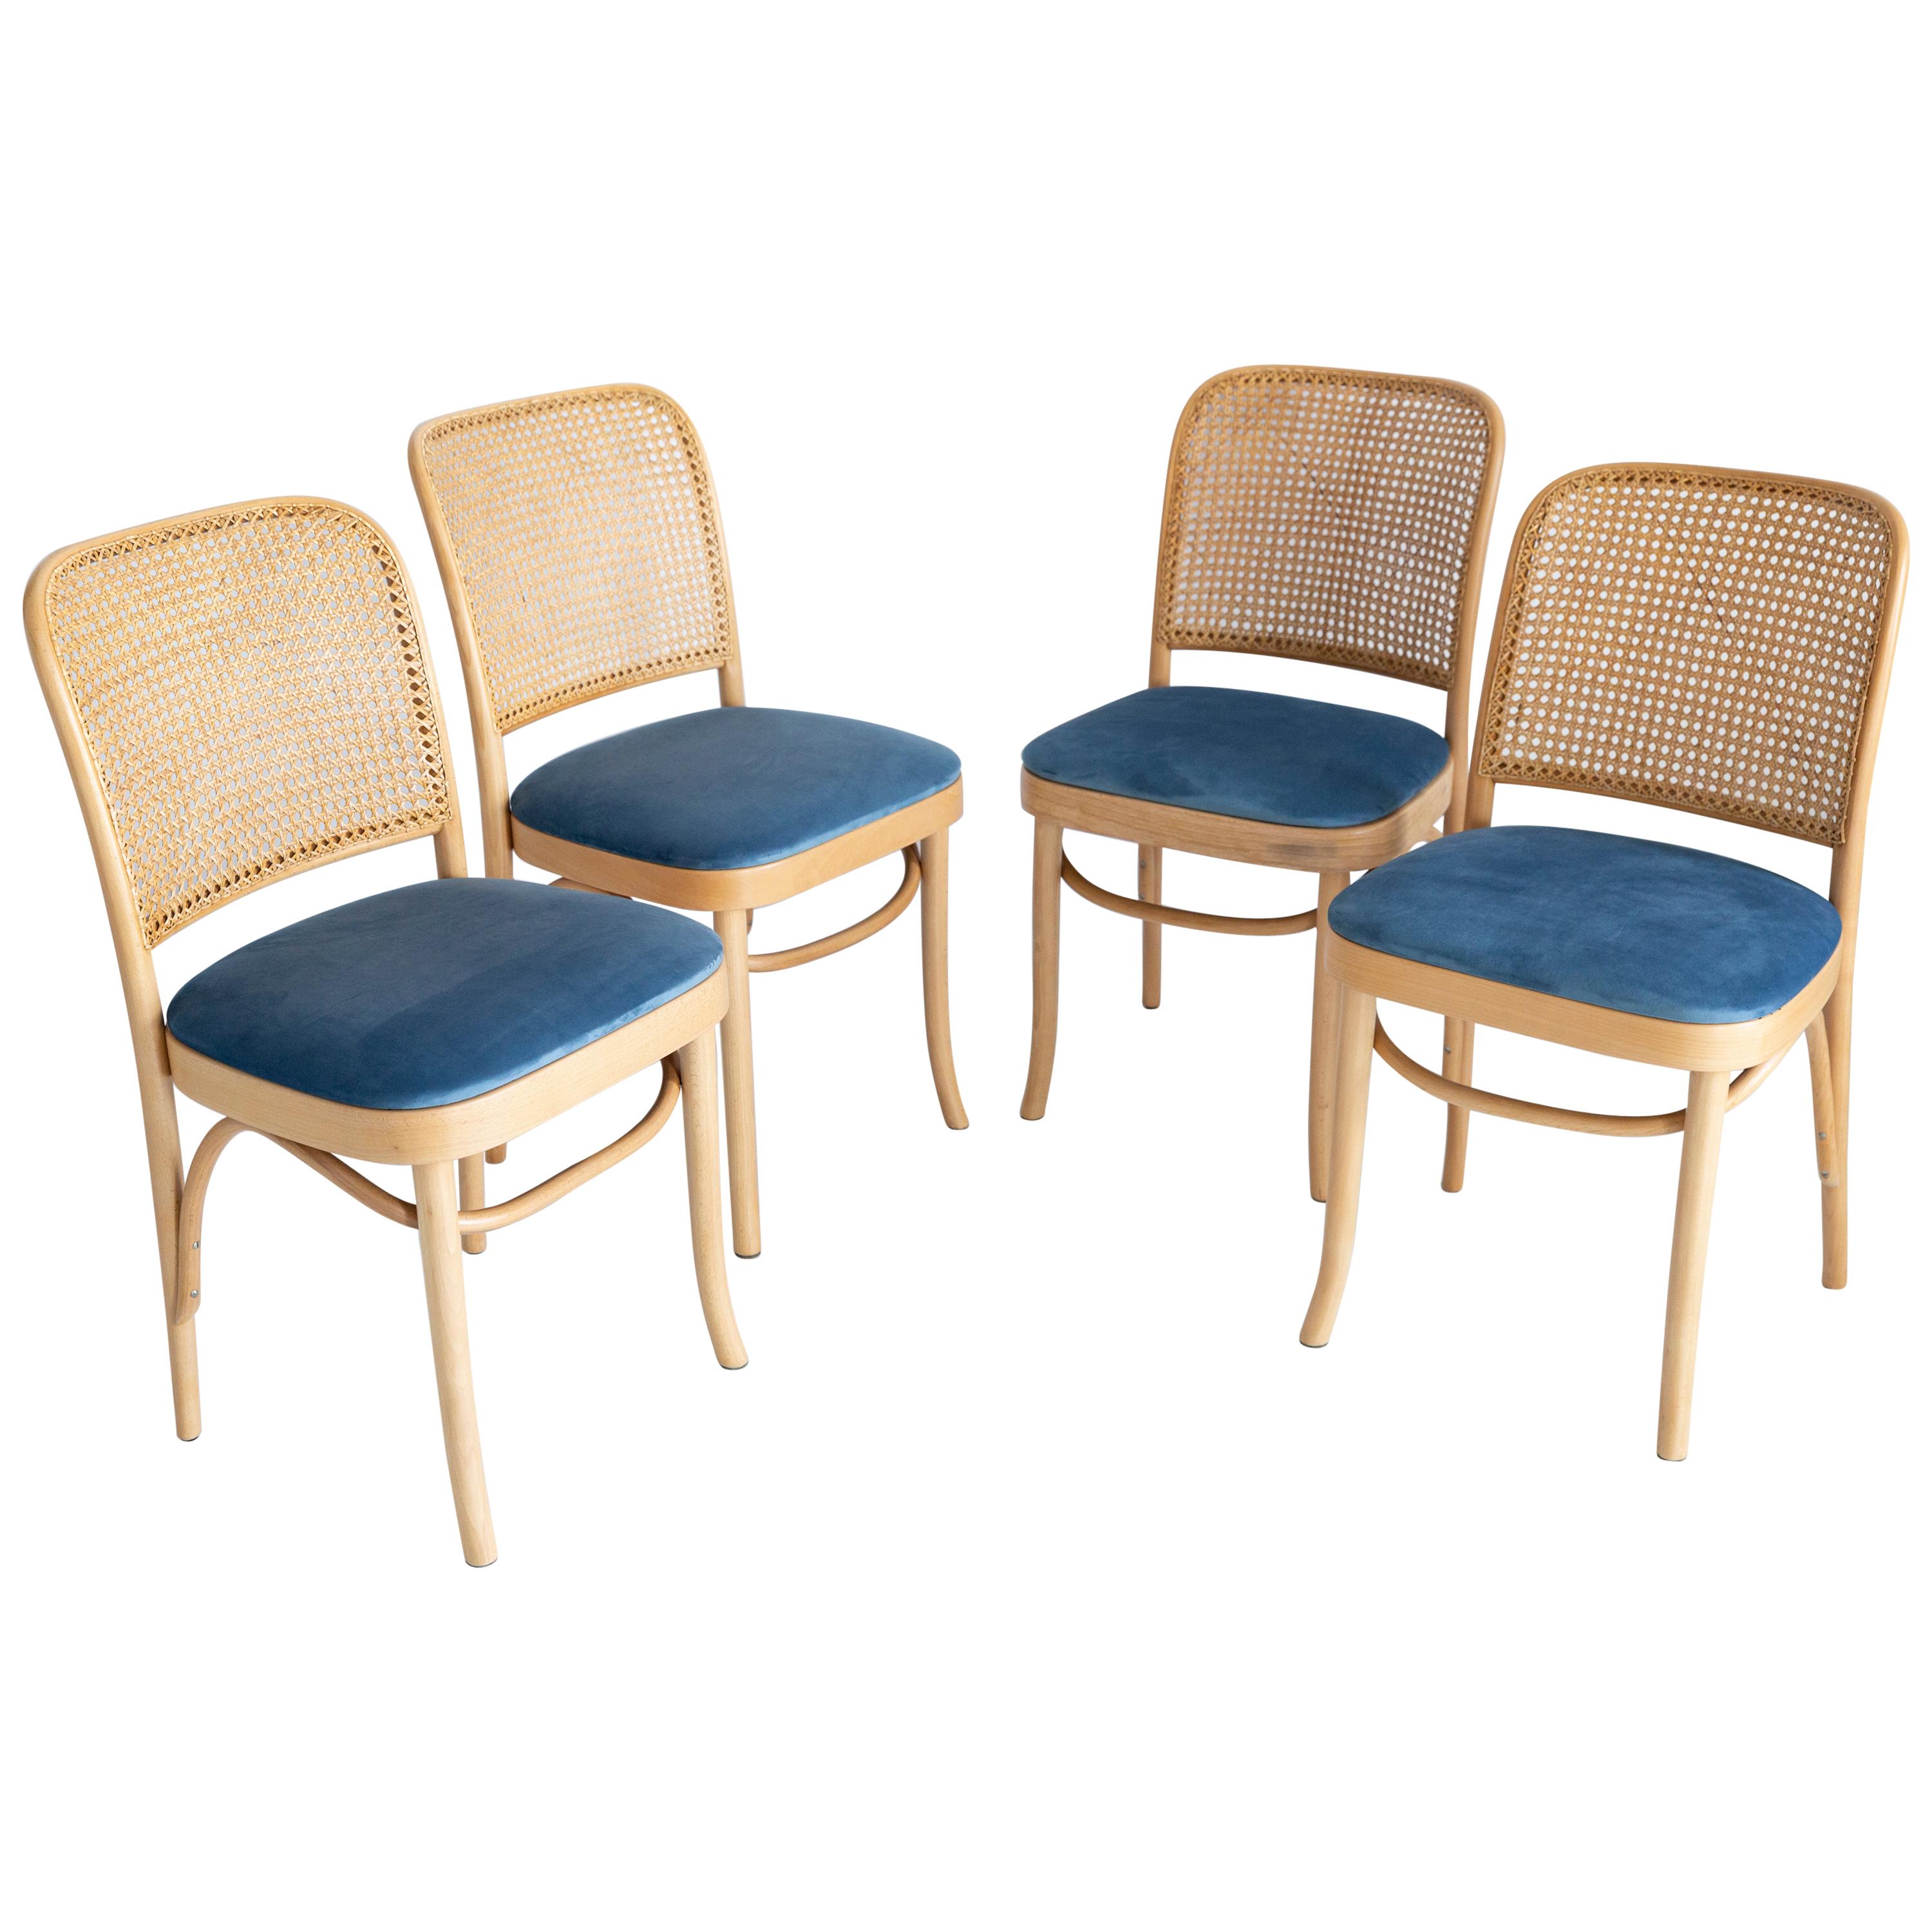 Satz von vier blauen Thonet Holz-Rattan-Stühlen, 1960er Jahre